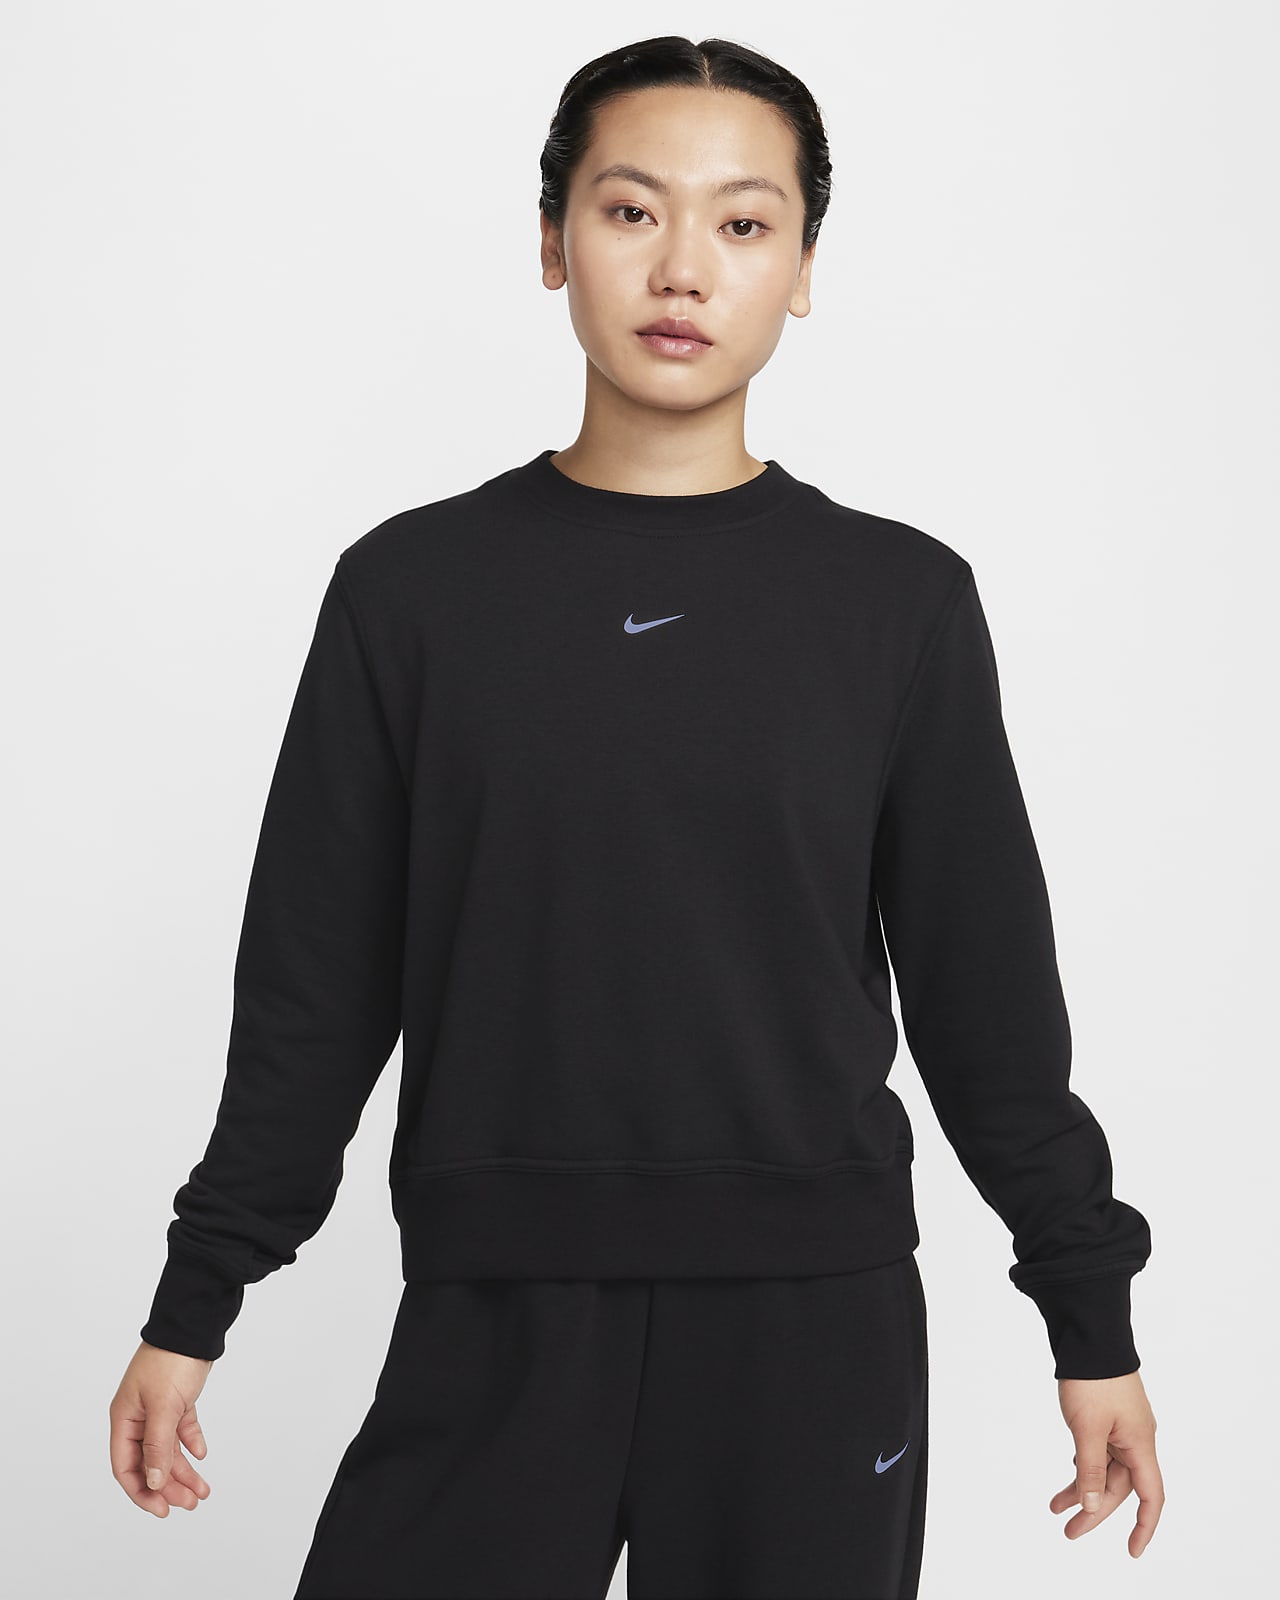 Nike Dri-FIT One 女款圓領法國毛圈布運動衫